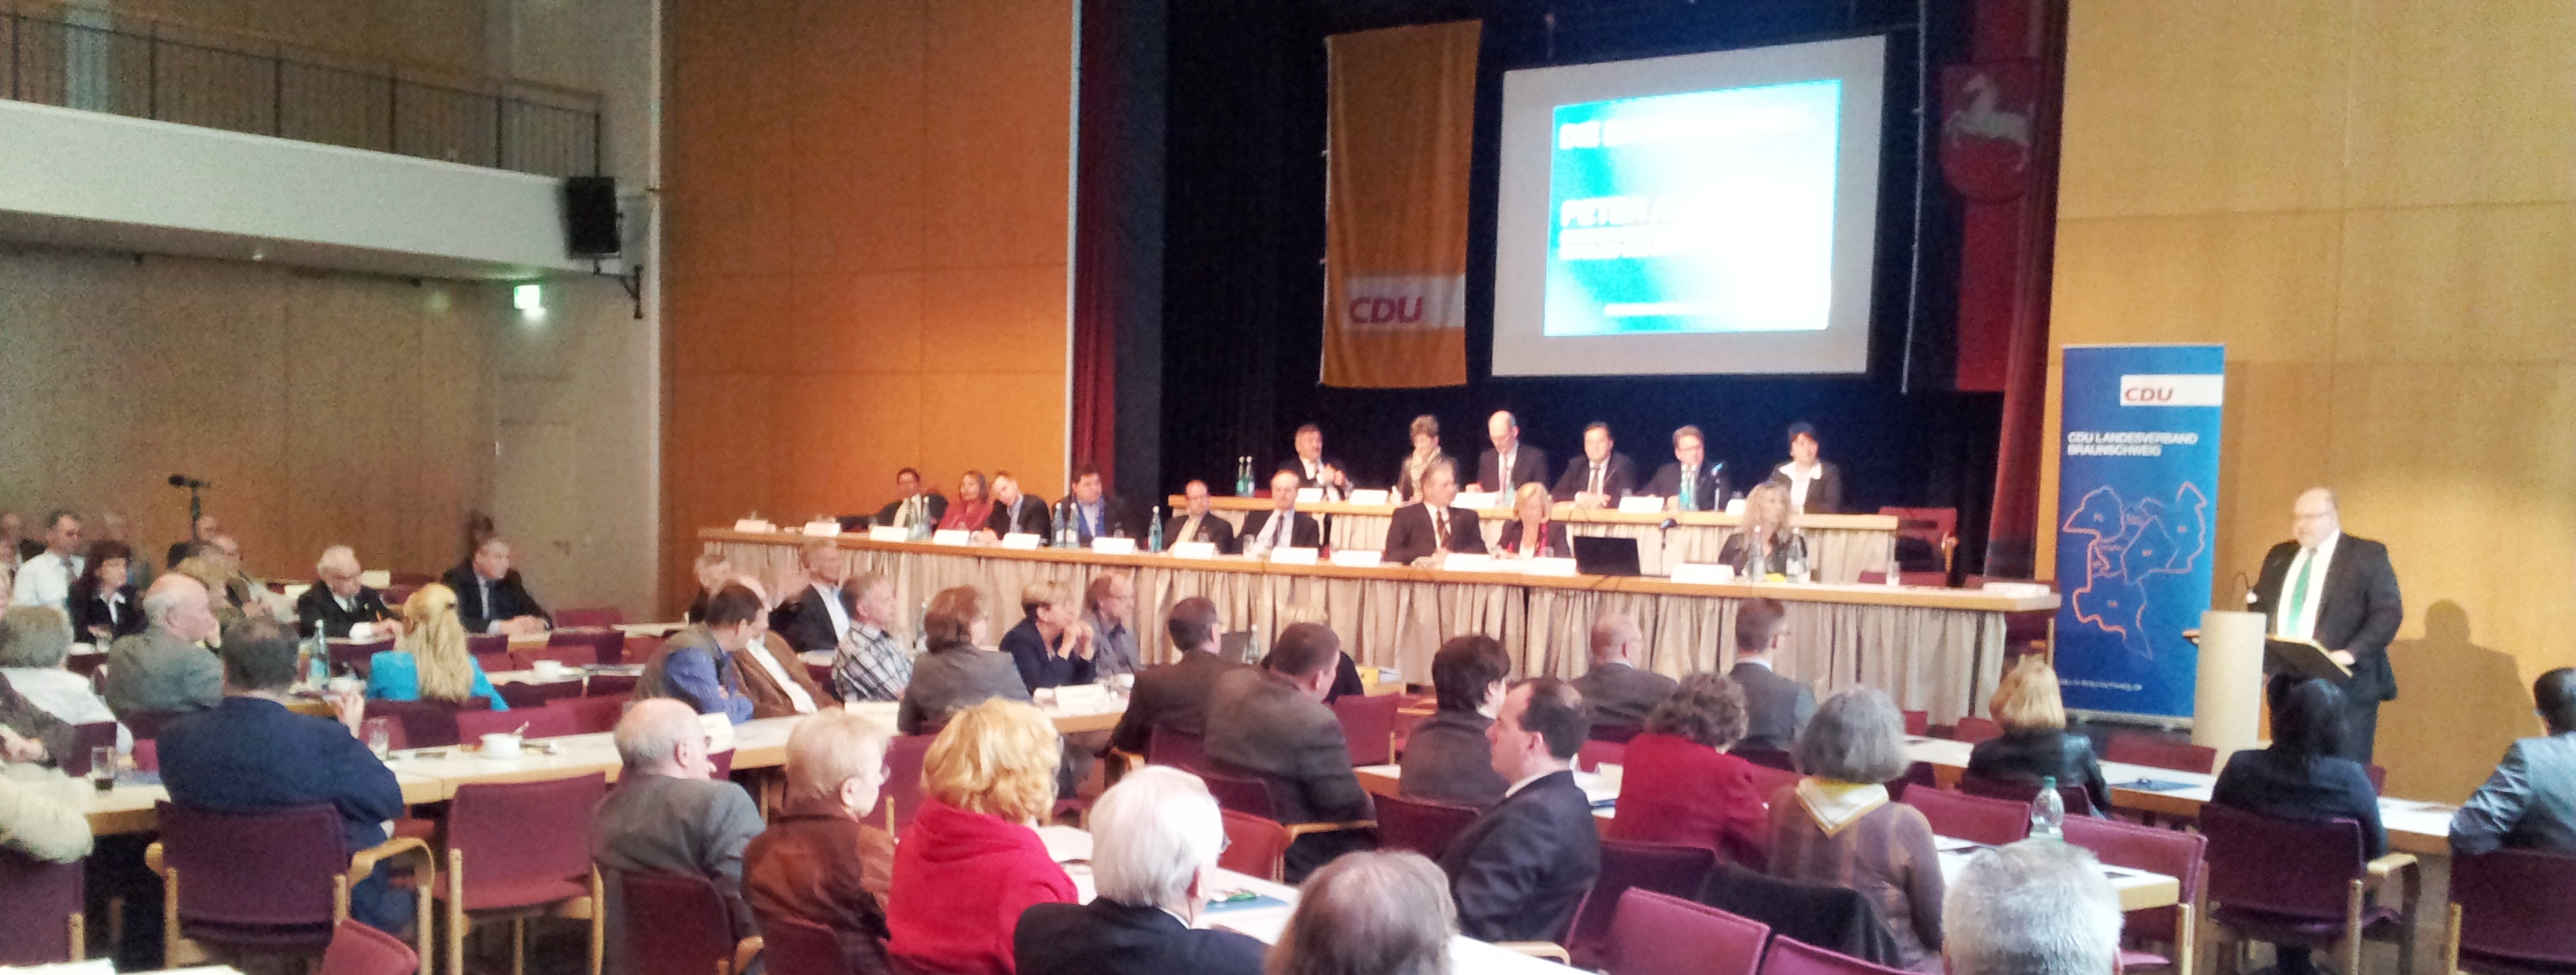 11.42.2013 - Landesparteitag 2013 - Blick in das Plenum des Landesparteitages im Forum Peine.